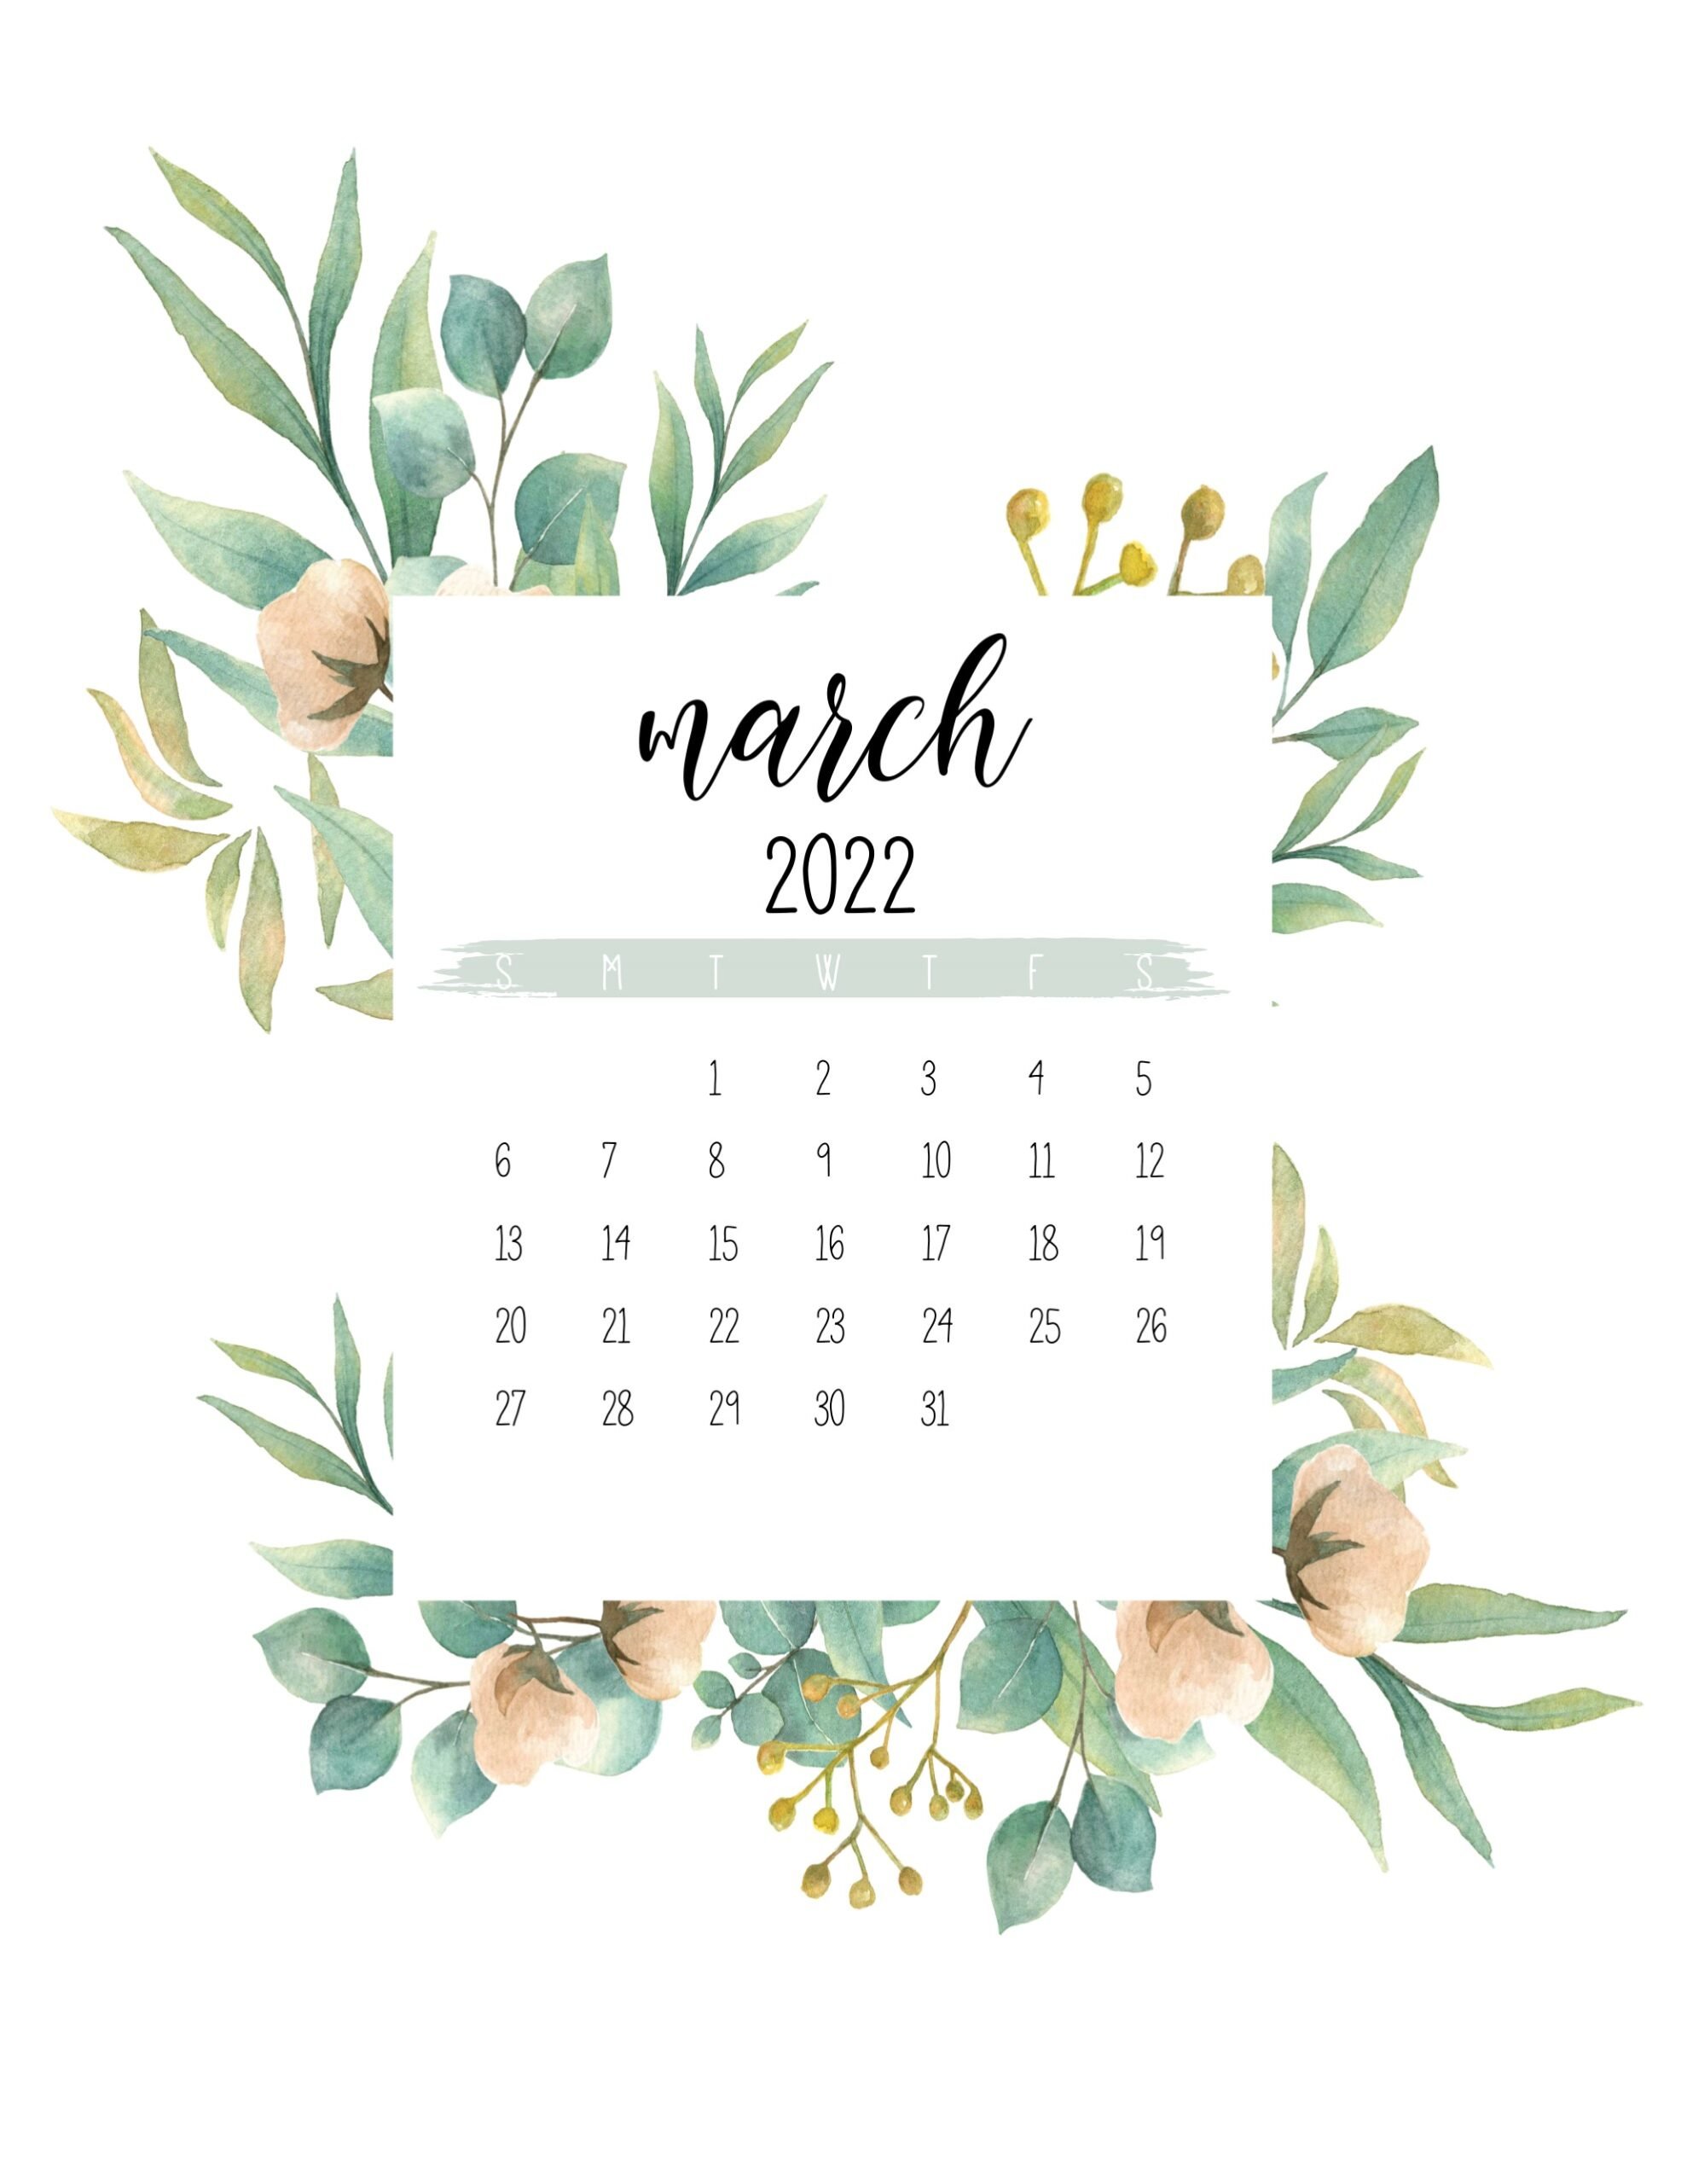 Free Downloadable Tech Backgrounds for March 2019  The Everygirl  Desktop  wallpaper Desktop wallpaper calendar Tech background